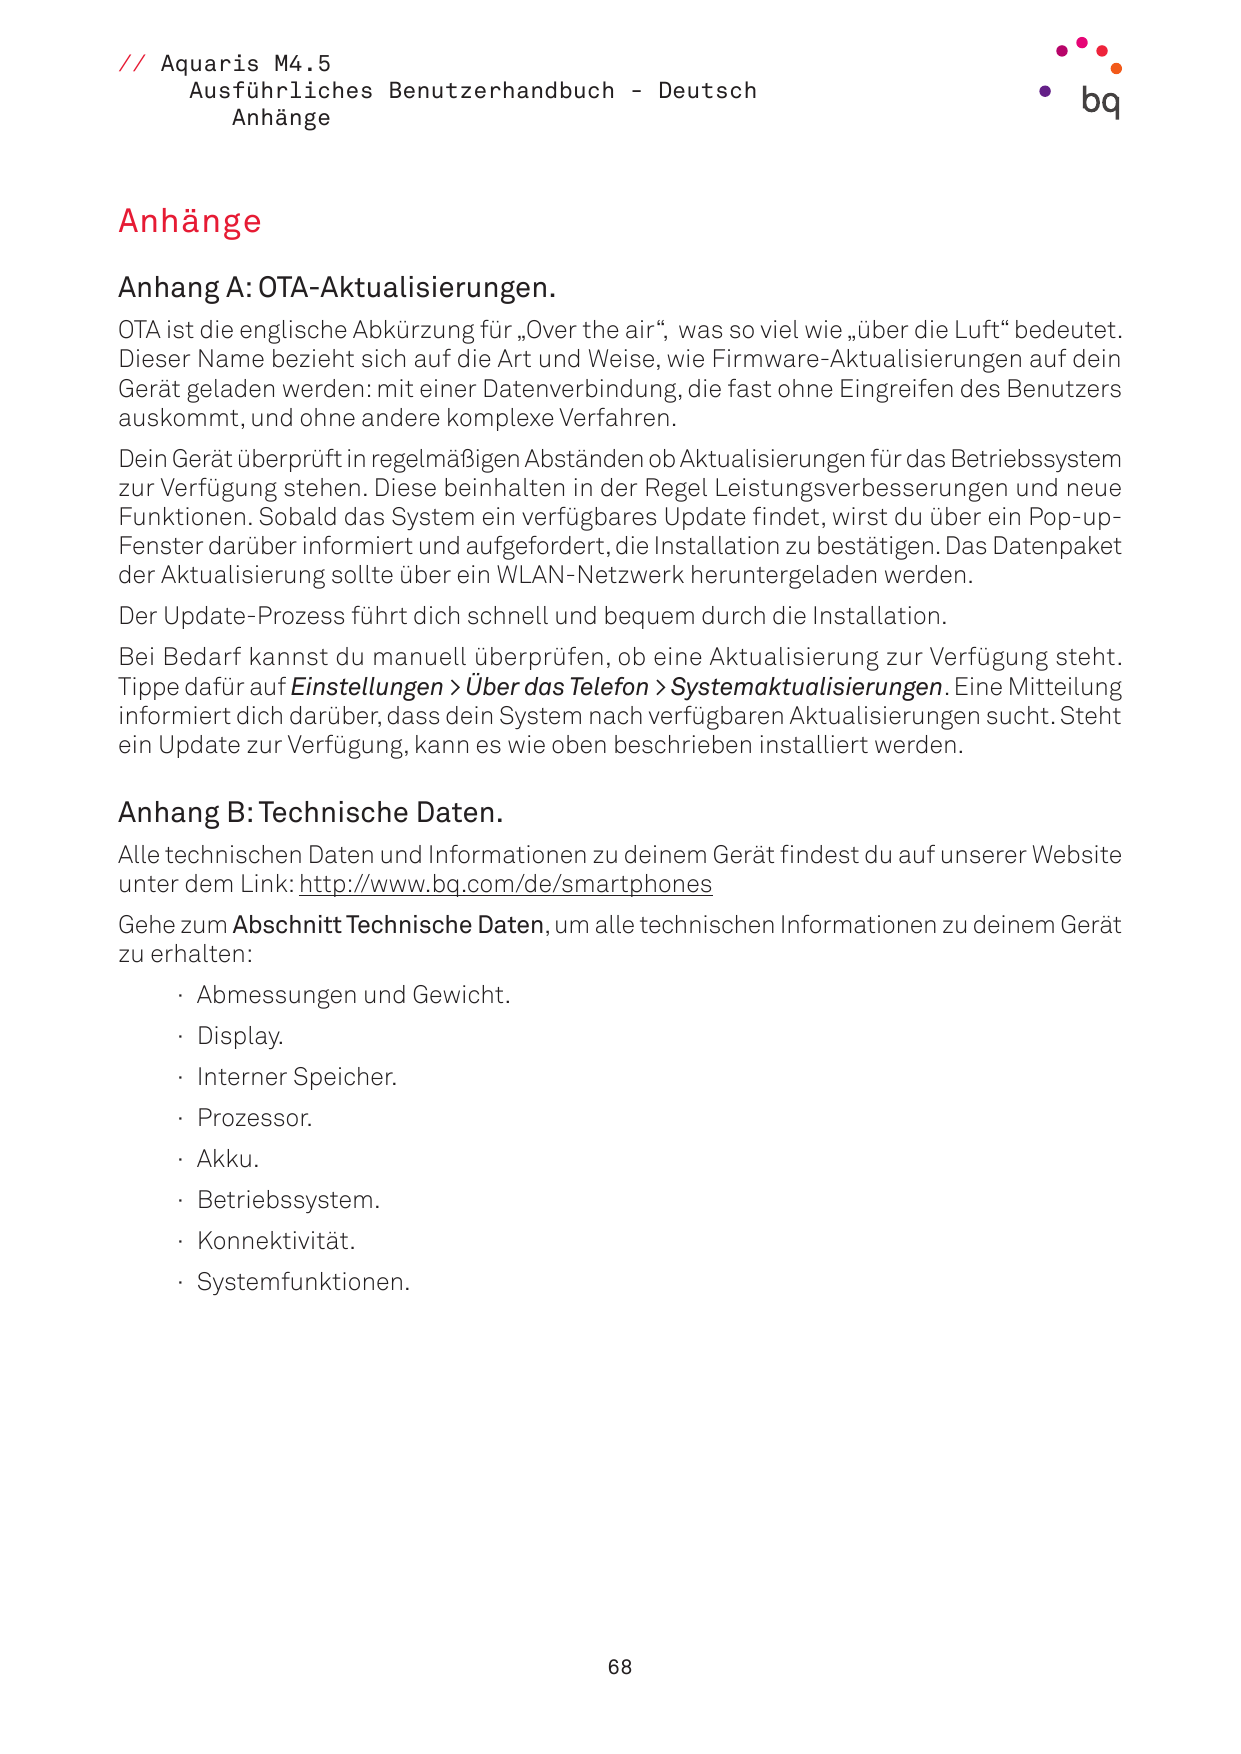 // Aquaris M4.5Ausführliches Benutzerhandbuch - DeutschAnhängeAnhängeAnhang A: OTA-Aktualisierungen.OTA ist die englische Abkürz